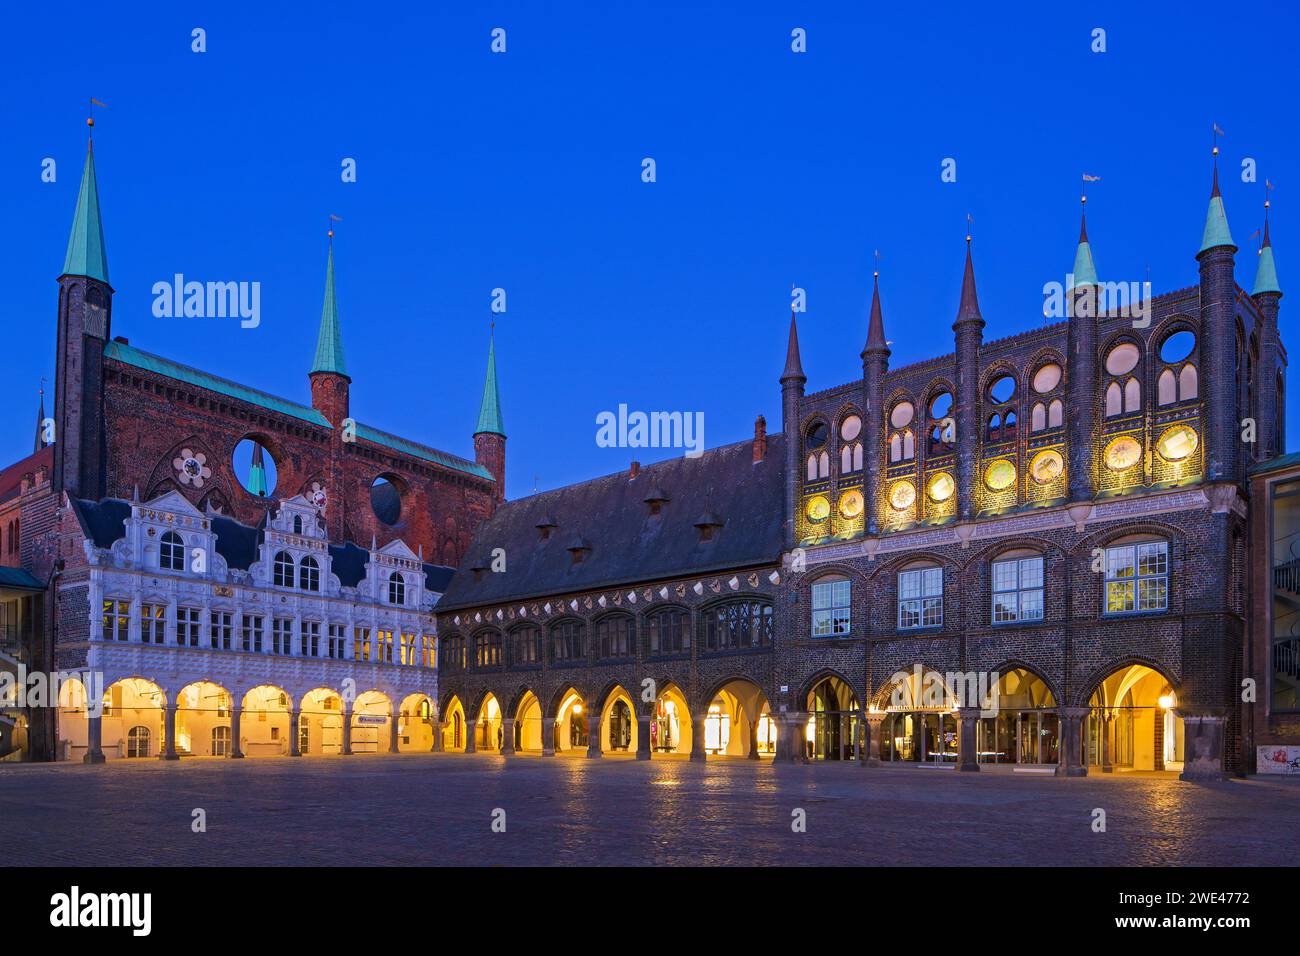 Municipio / municipio in mattoni gotici e mercato illuminato di notte nella città anseatica di Lübeck / Lubecca, Schleswig-Holstein, Germania Foto Stock